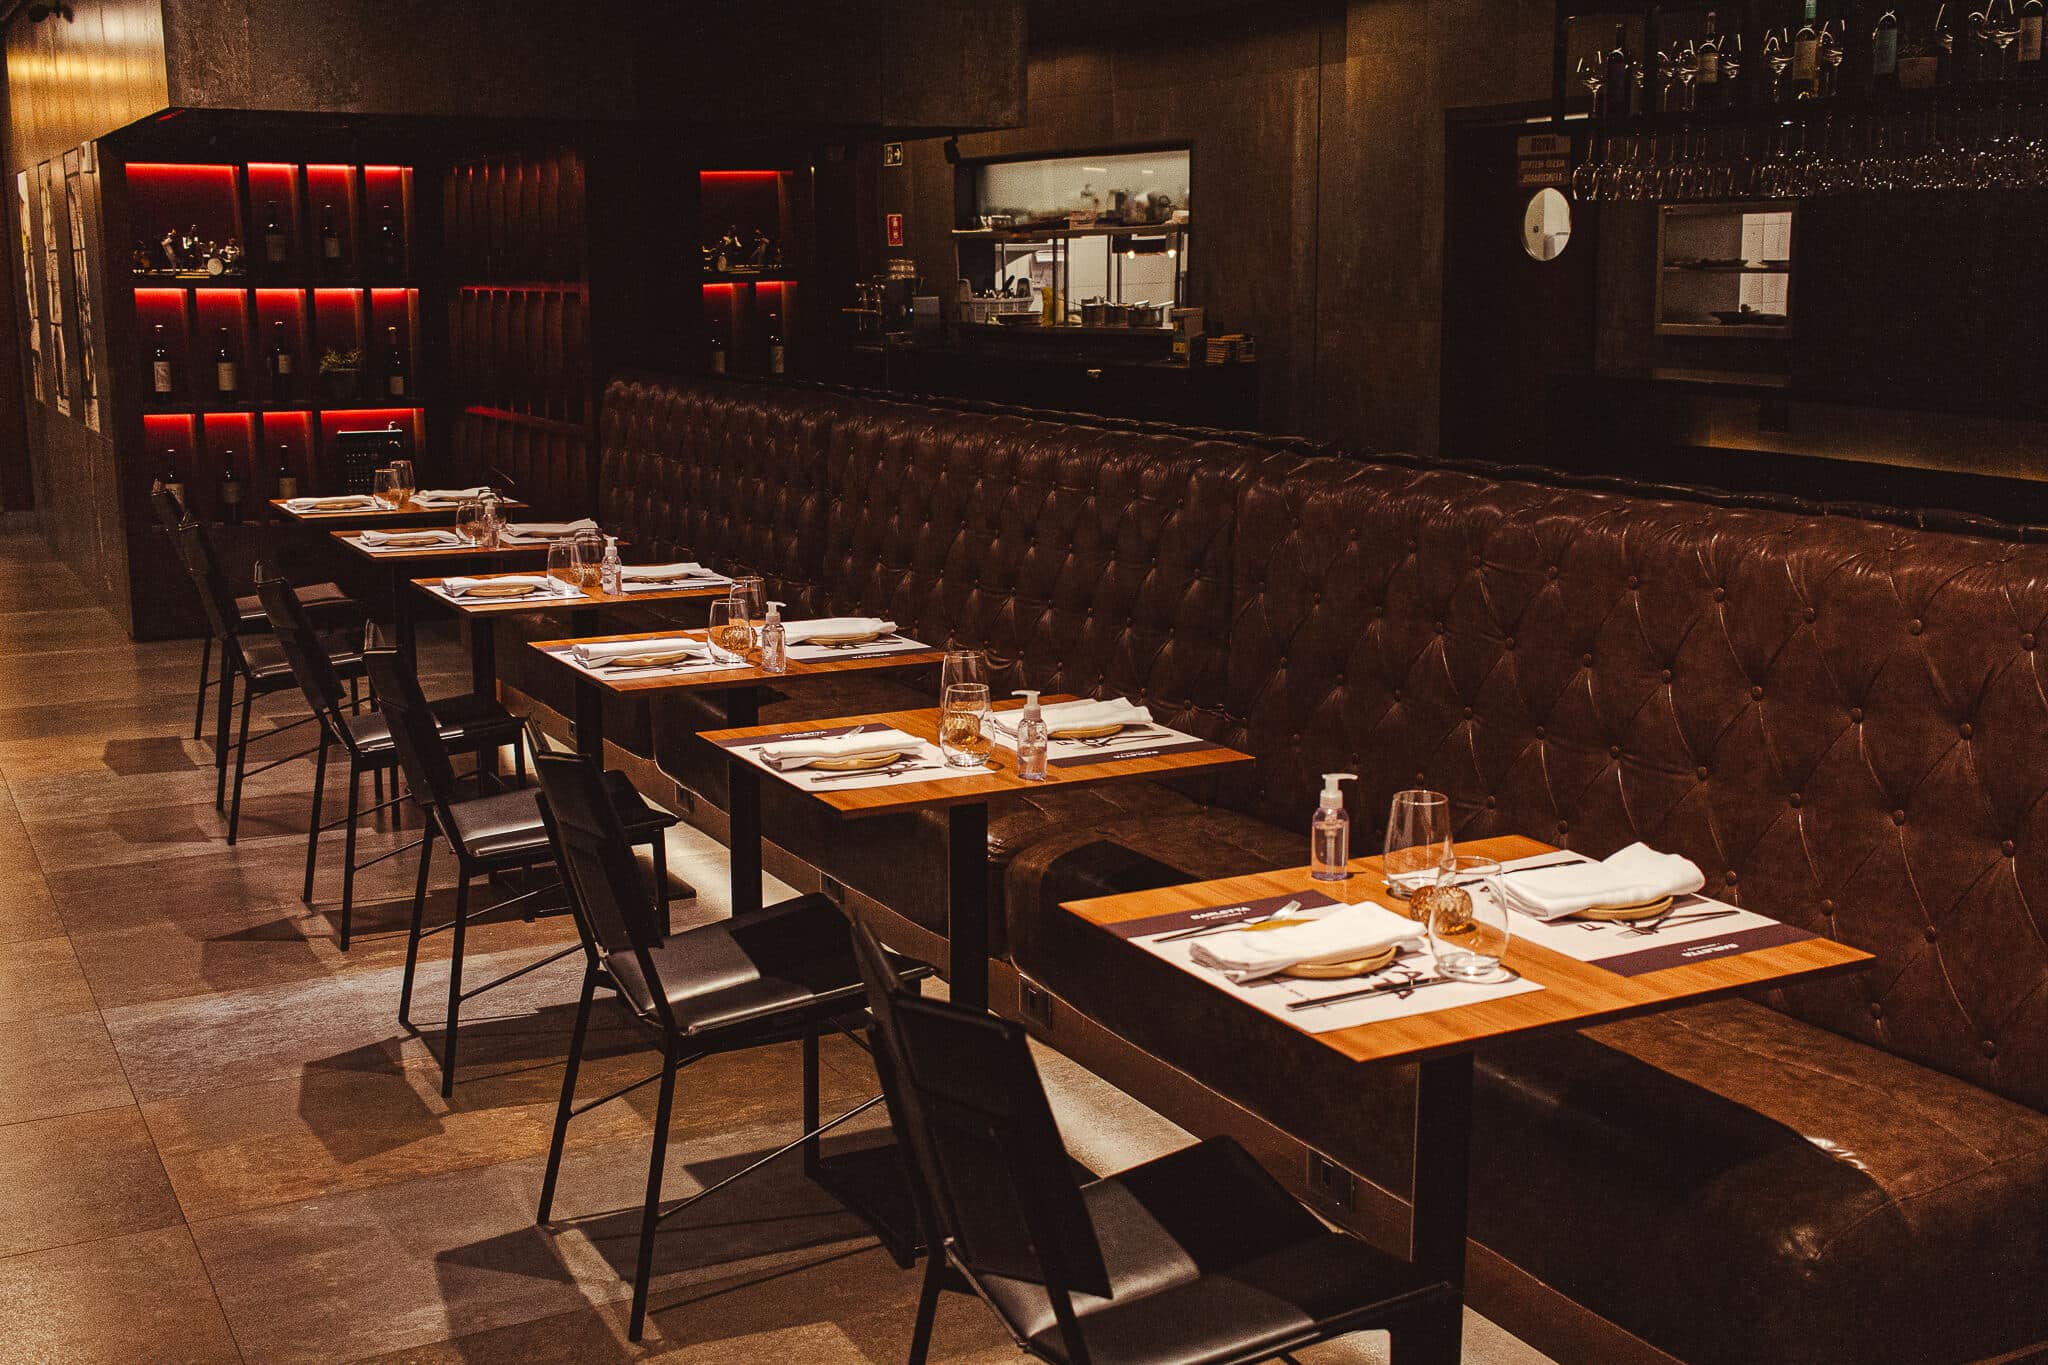 foto mostra ambiente interno do barletta ristorante, com decoração elegante e iluminação quente.